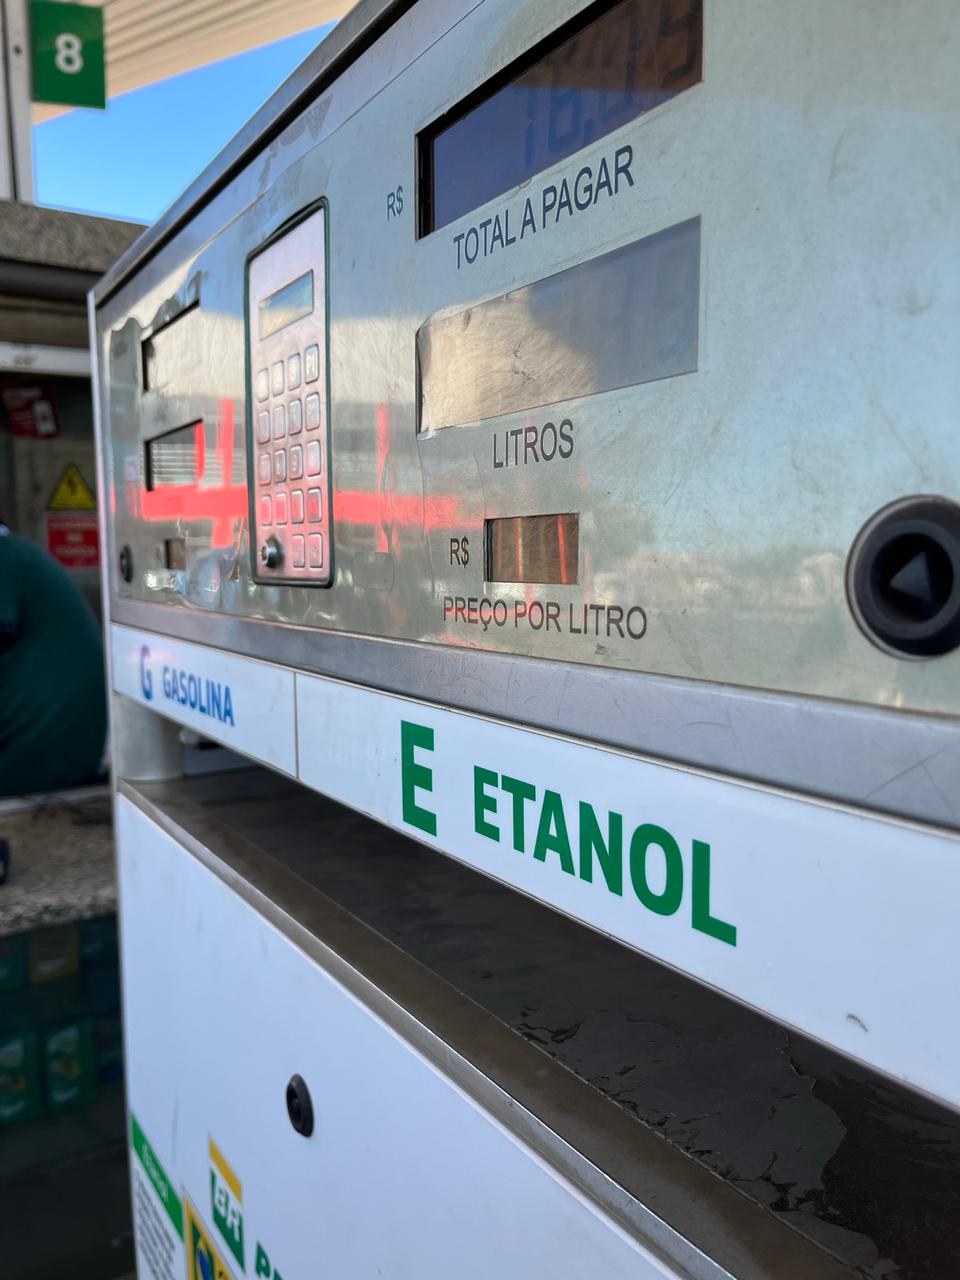 ICMS do etanol no Maranhão passa de 26 para 12%